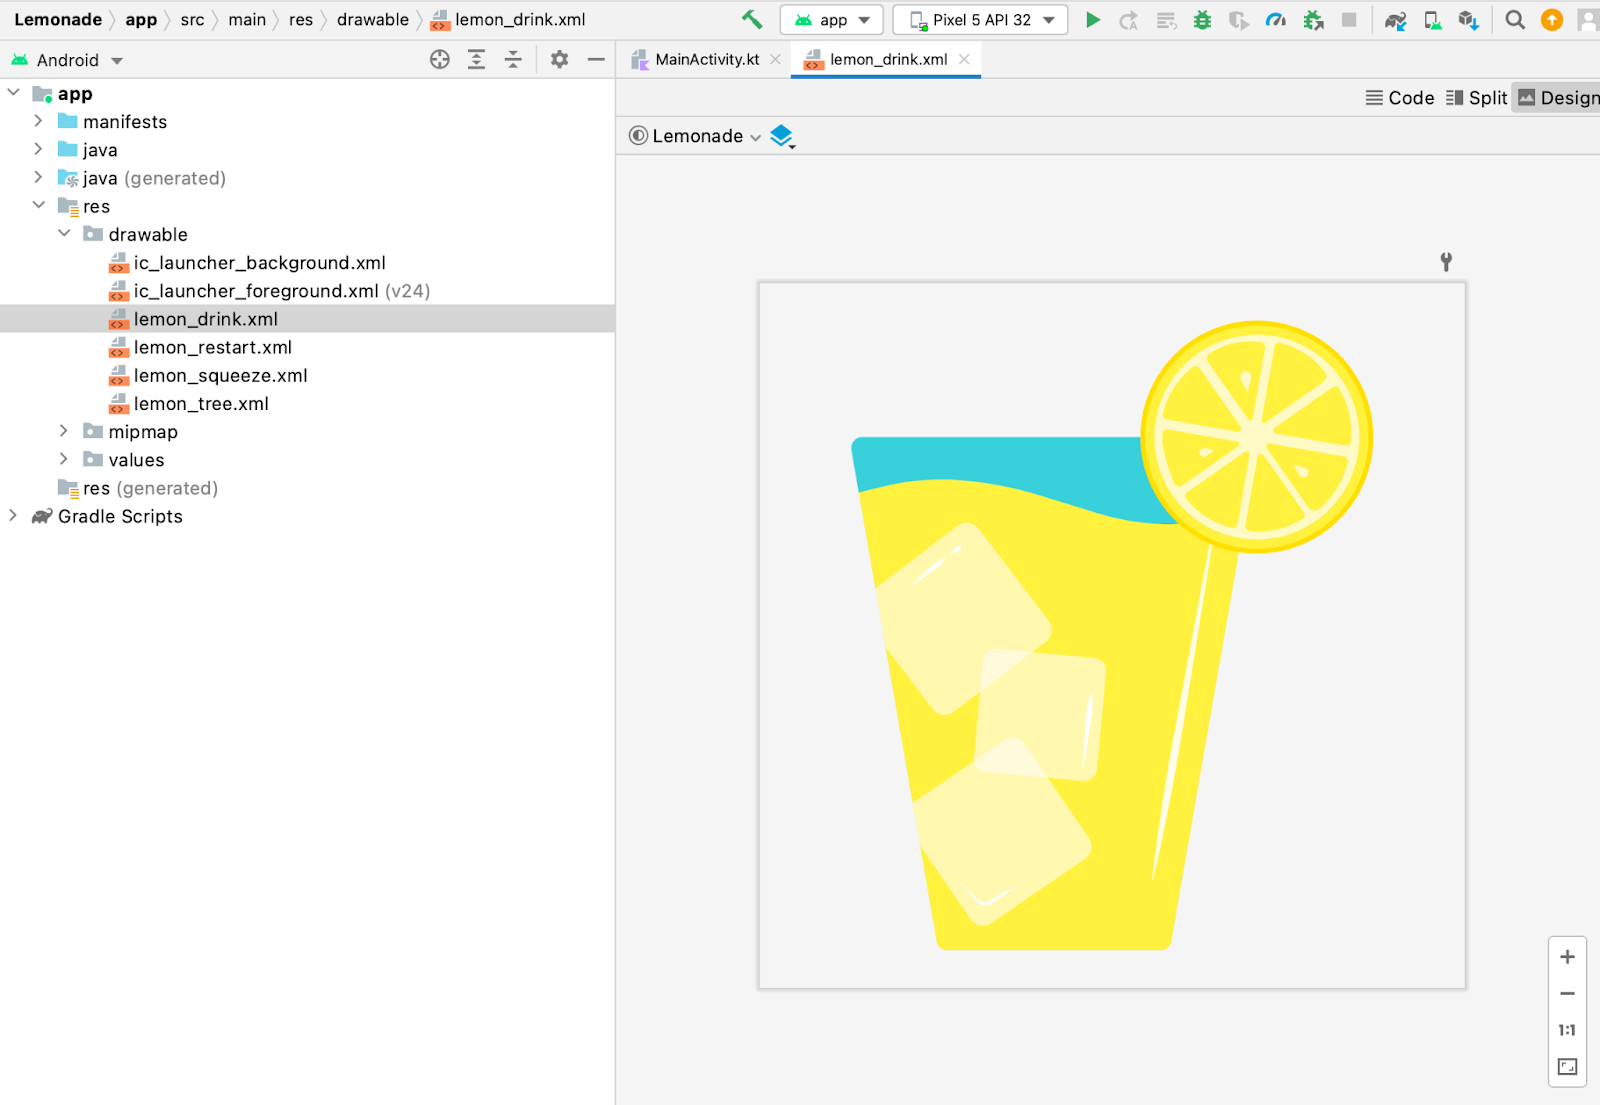 Android Studio の [Project] ペインで lemon_drink.xml というドローアブル ファイルが選択されています。[Design] ペインで、そのドローアブル ファイルのプレビューが開いています（レモネードの入った大きなグラスの画像）。